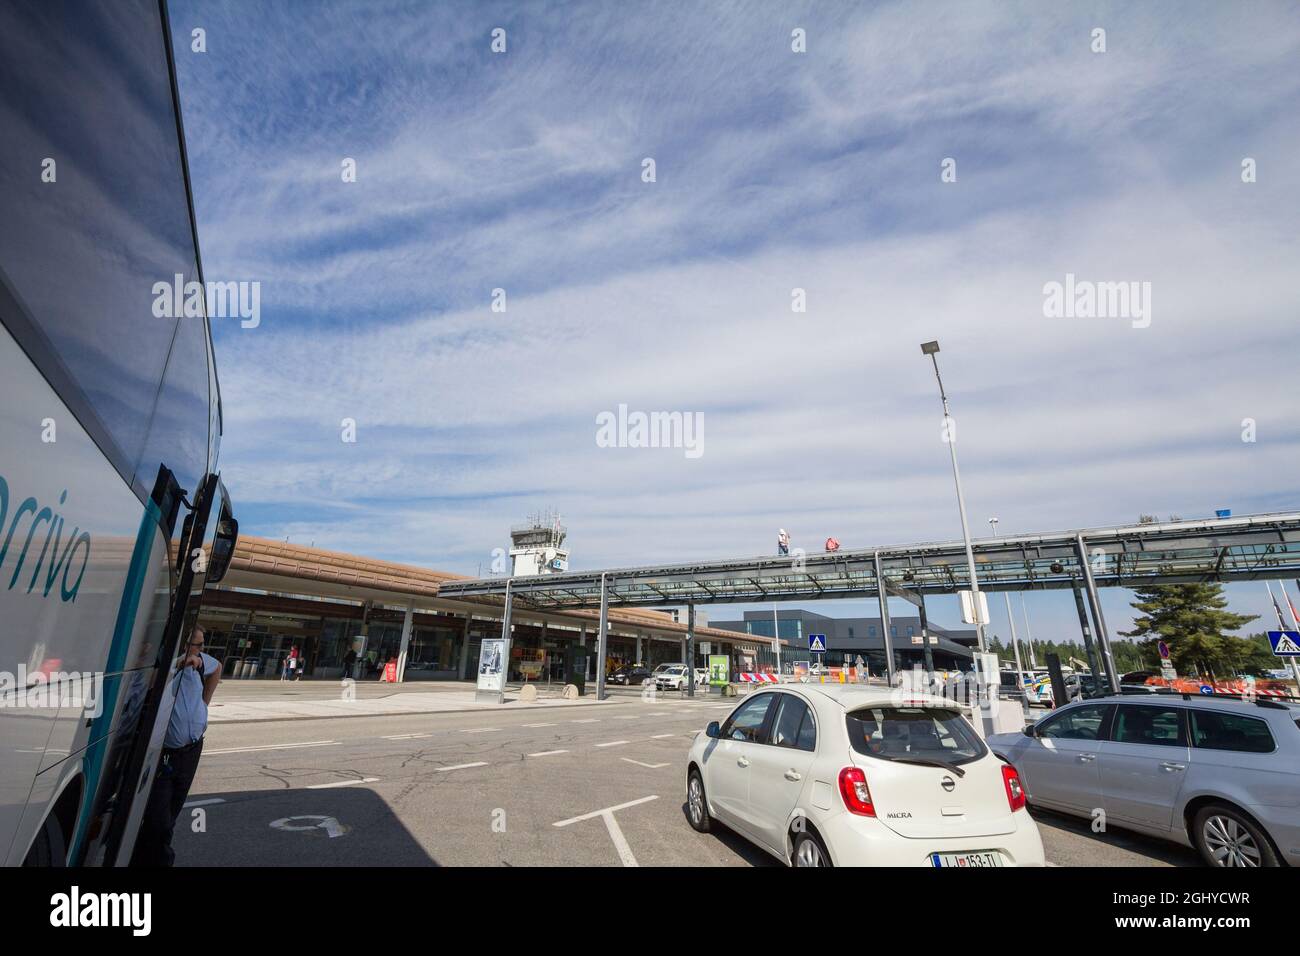 Photo de l'aéroport de Joze Pucnik Ljubljana vu de la gare routière de Ljubljana, Slovénie. Aéroport Joze Pucnik de Ljubljana, également connu sous son nom précédent Banque D'Images